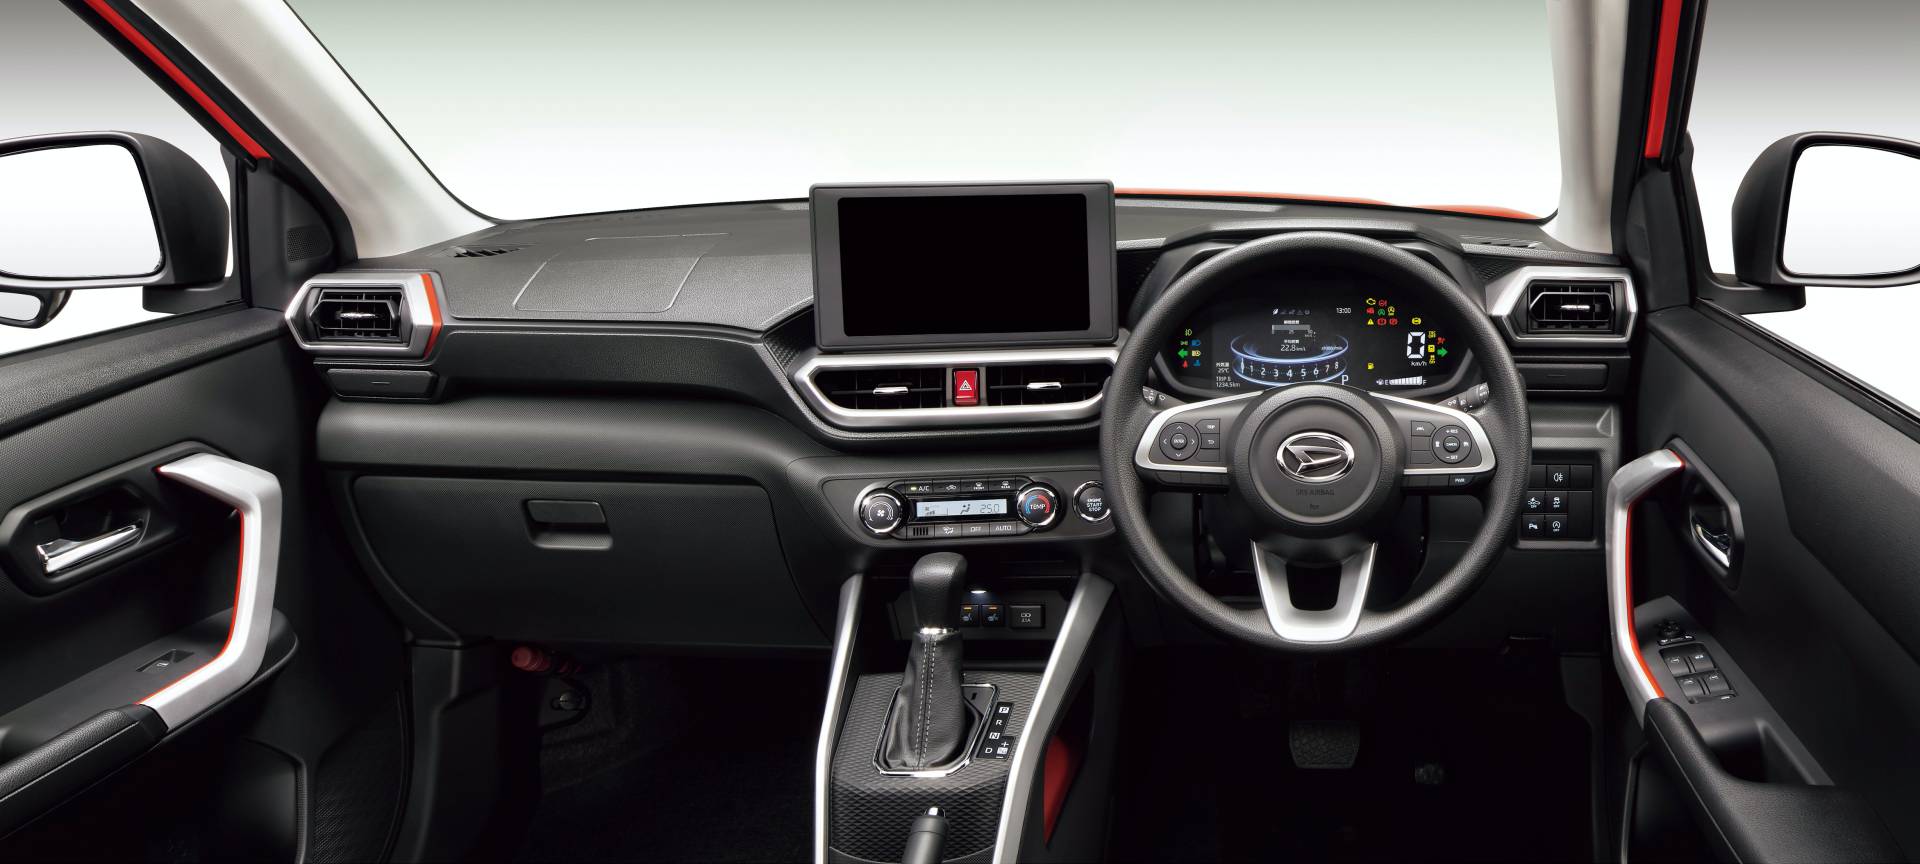 Daihatsu Rocky 2020 - lebih aksesori ditawarkan, harga sedikit mahal (dari RM64k) | Careta